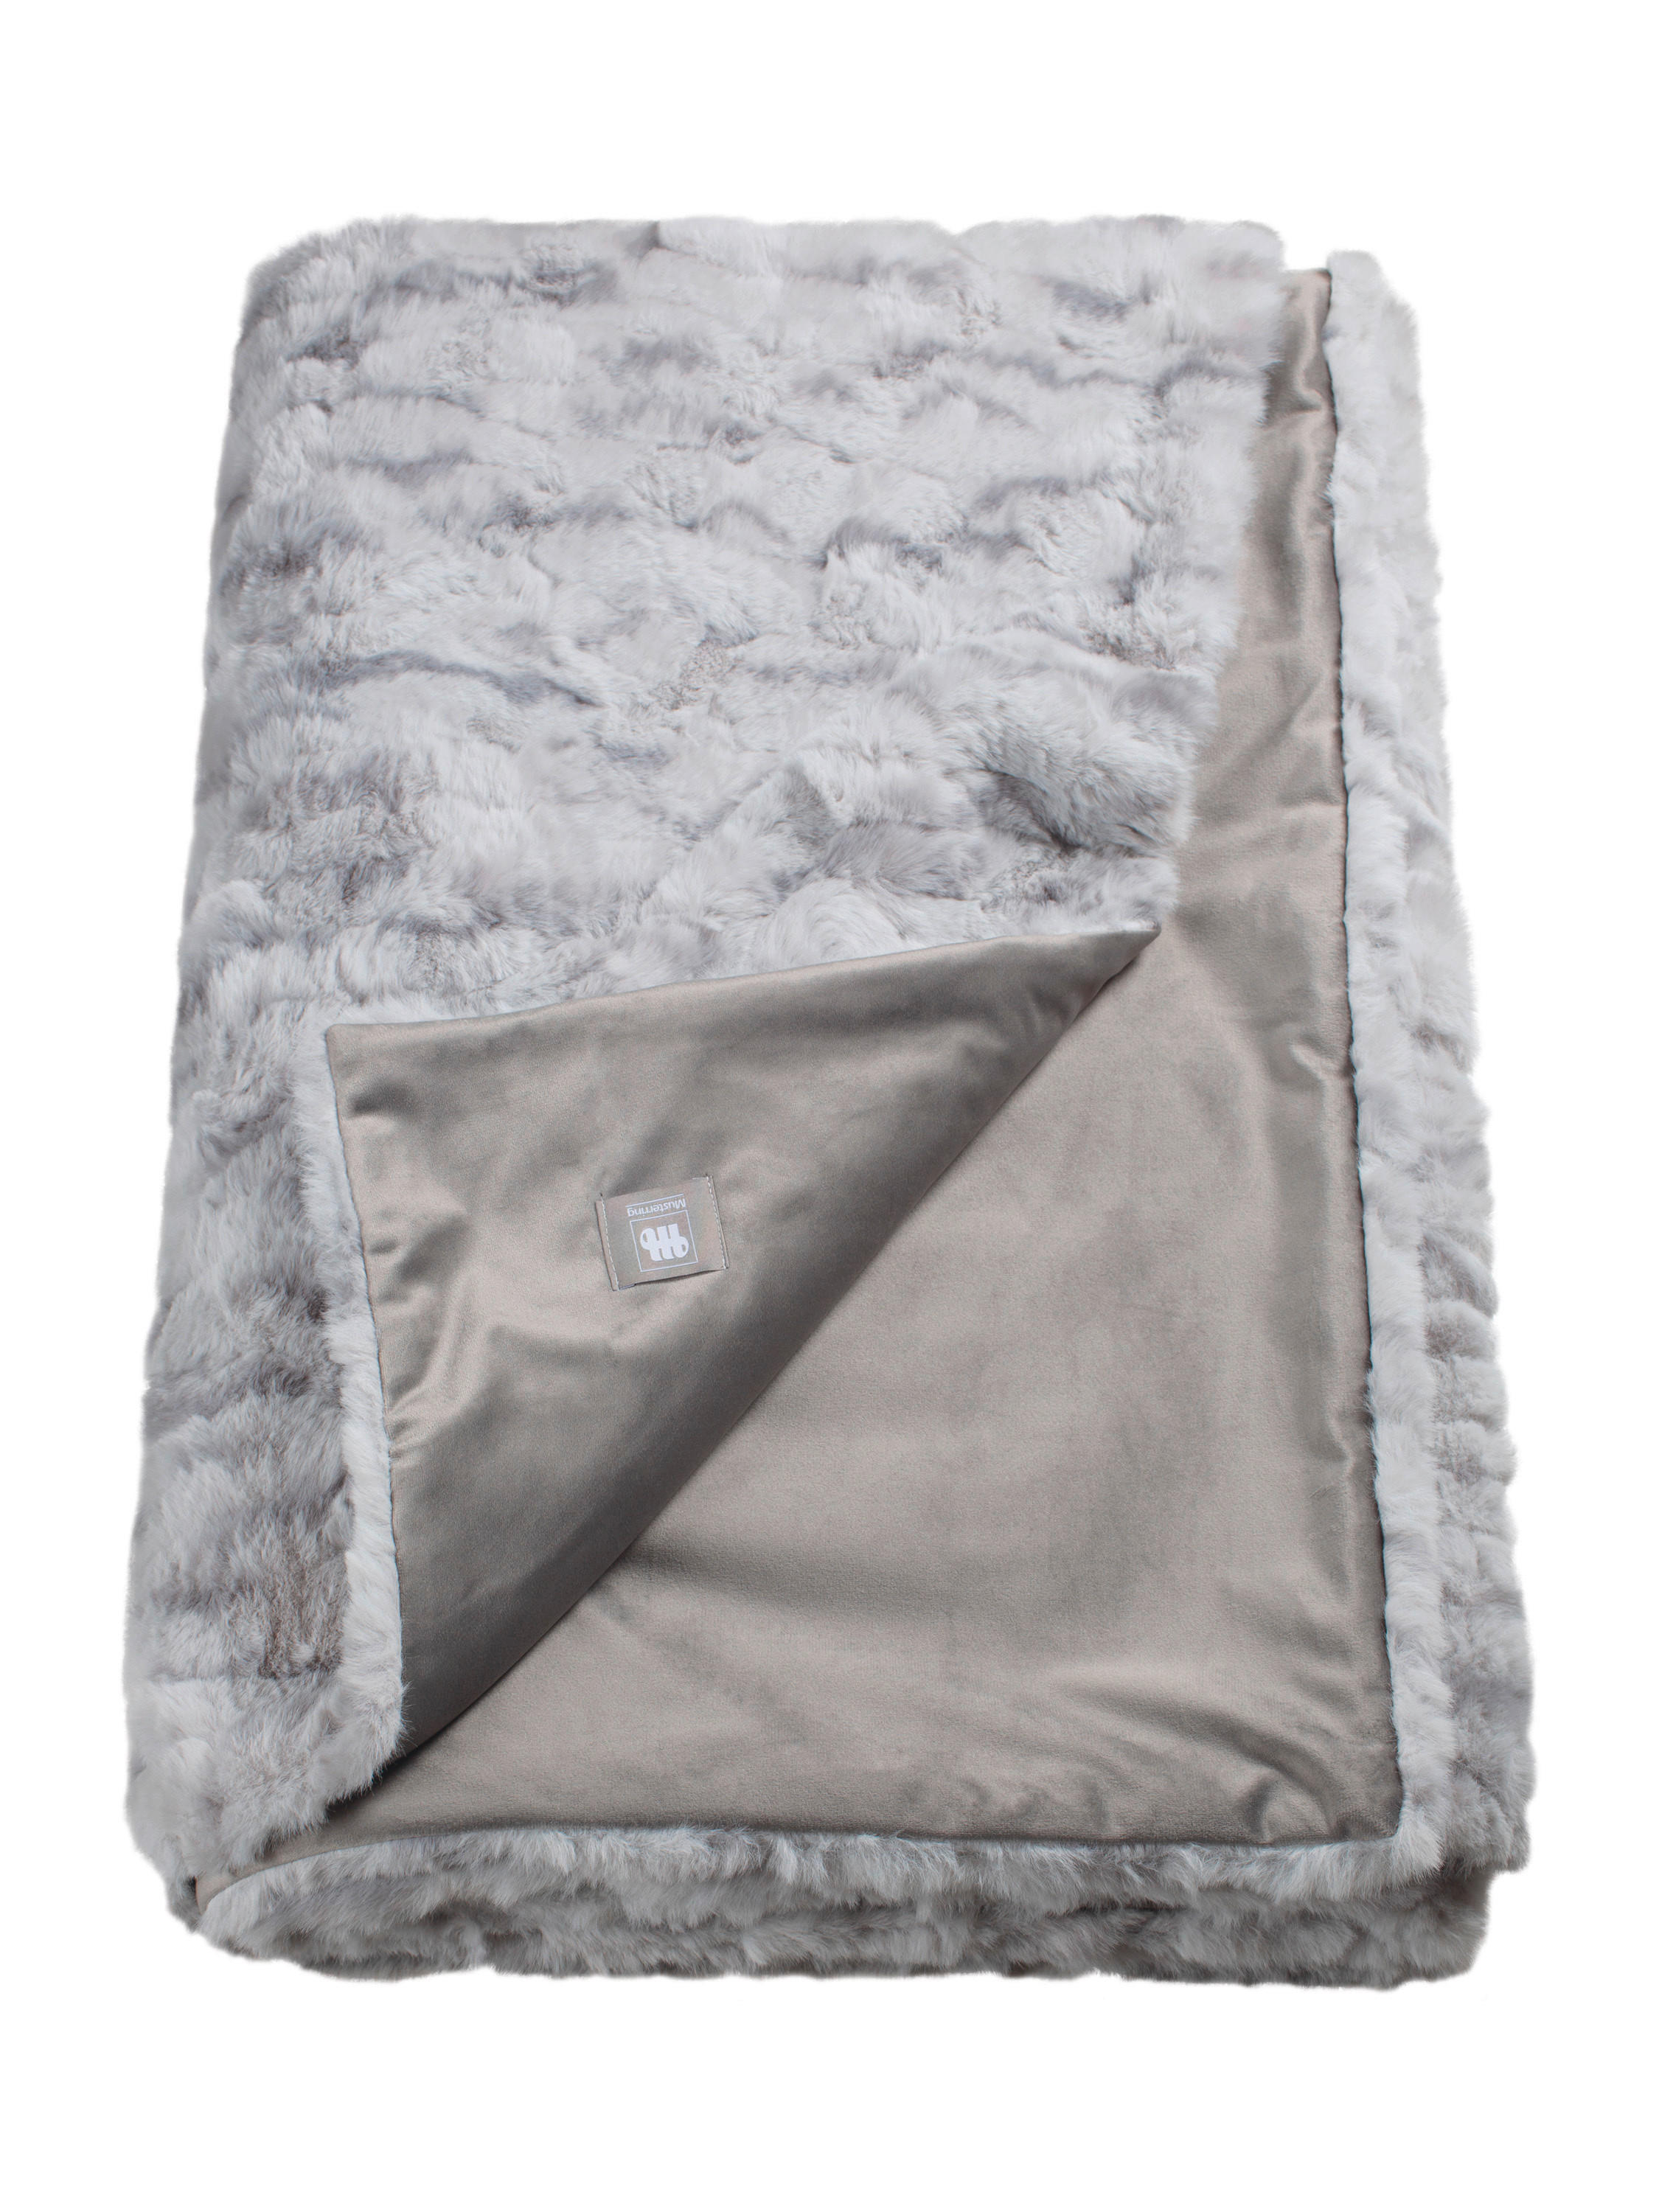 PLAID MR-Furry 130/170 cm  - Grau, Basics, Textil (130/170cm) - Musterring